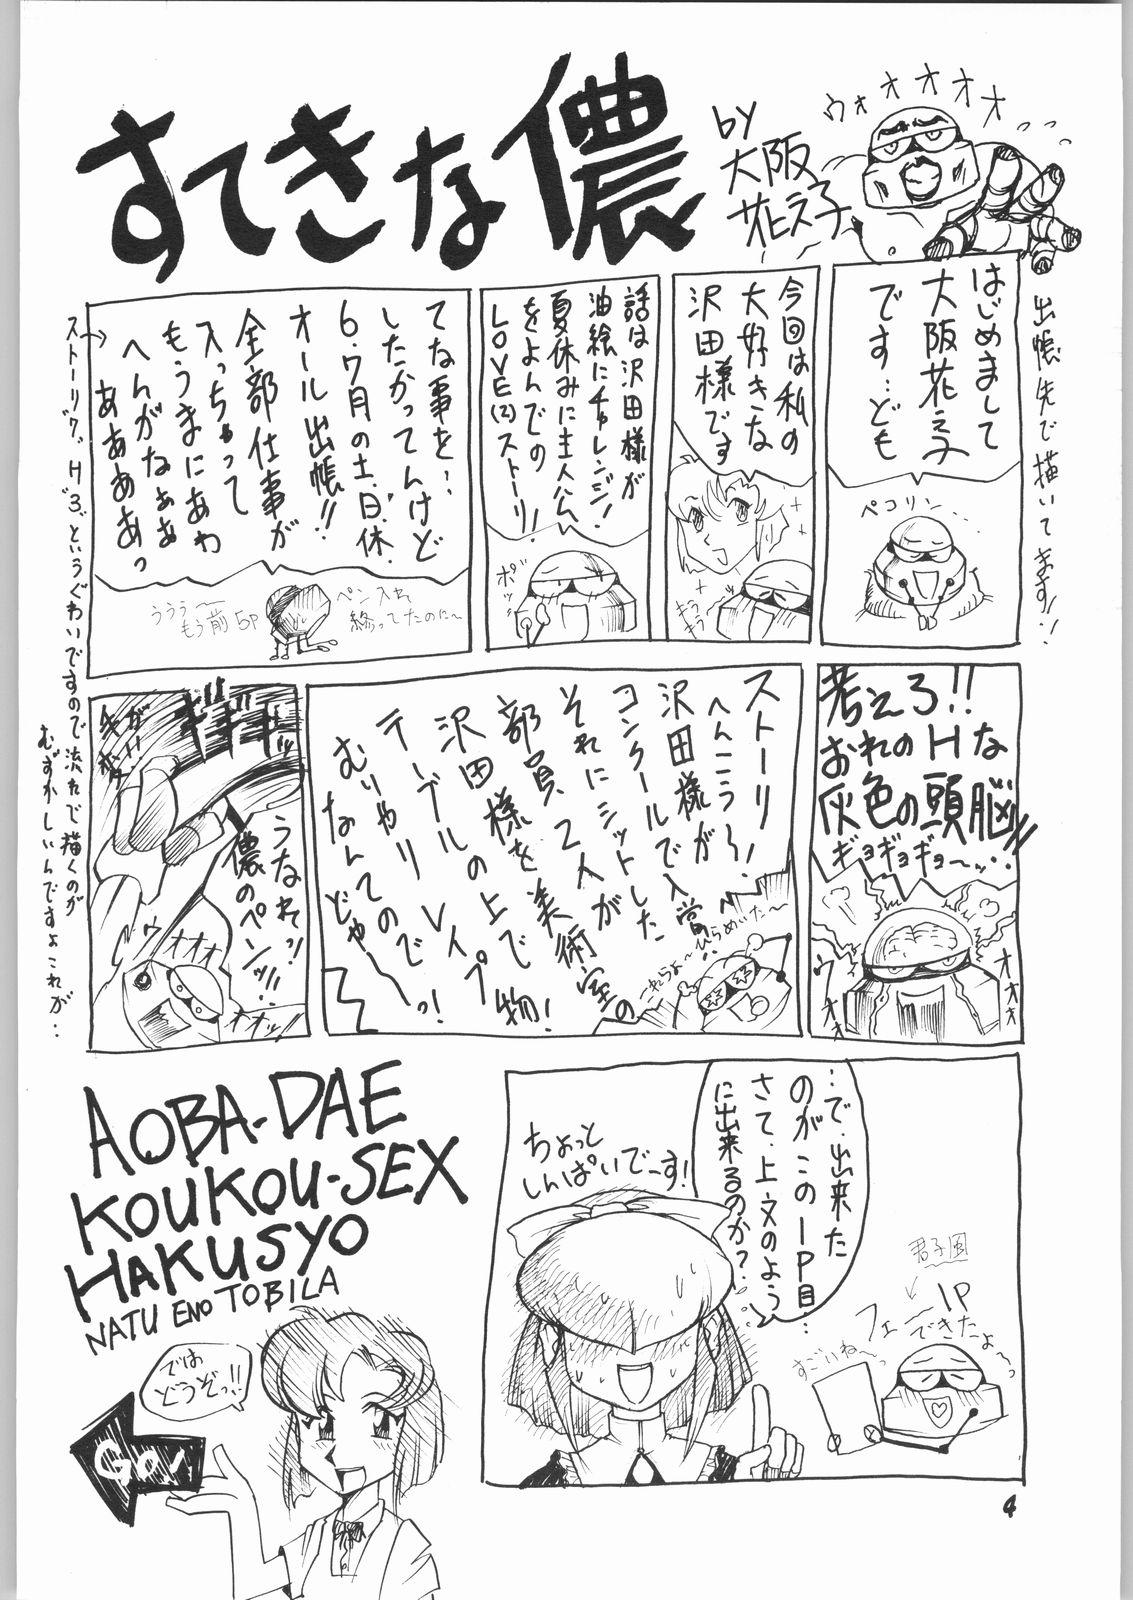 Orgy natsu eno tobira - True love story Korea - Page 3